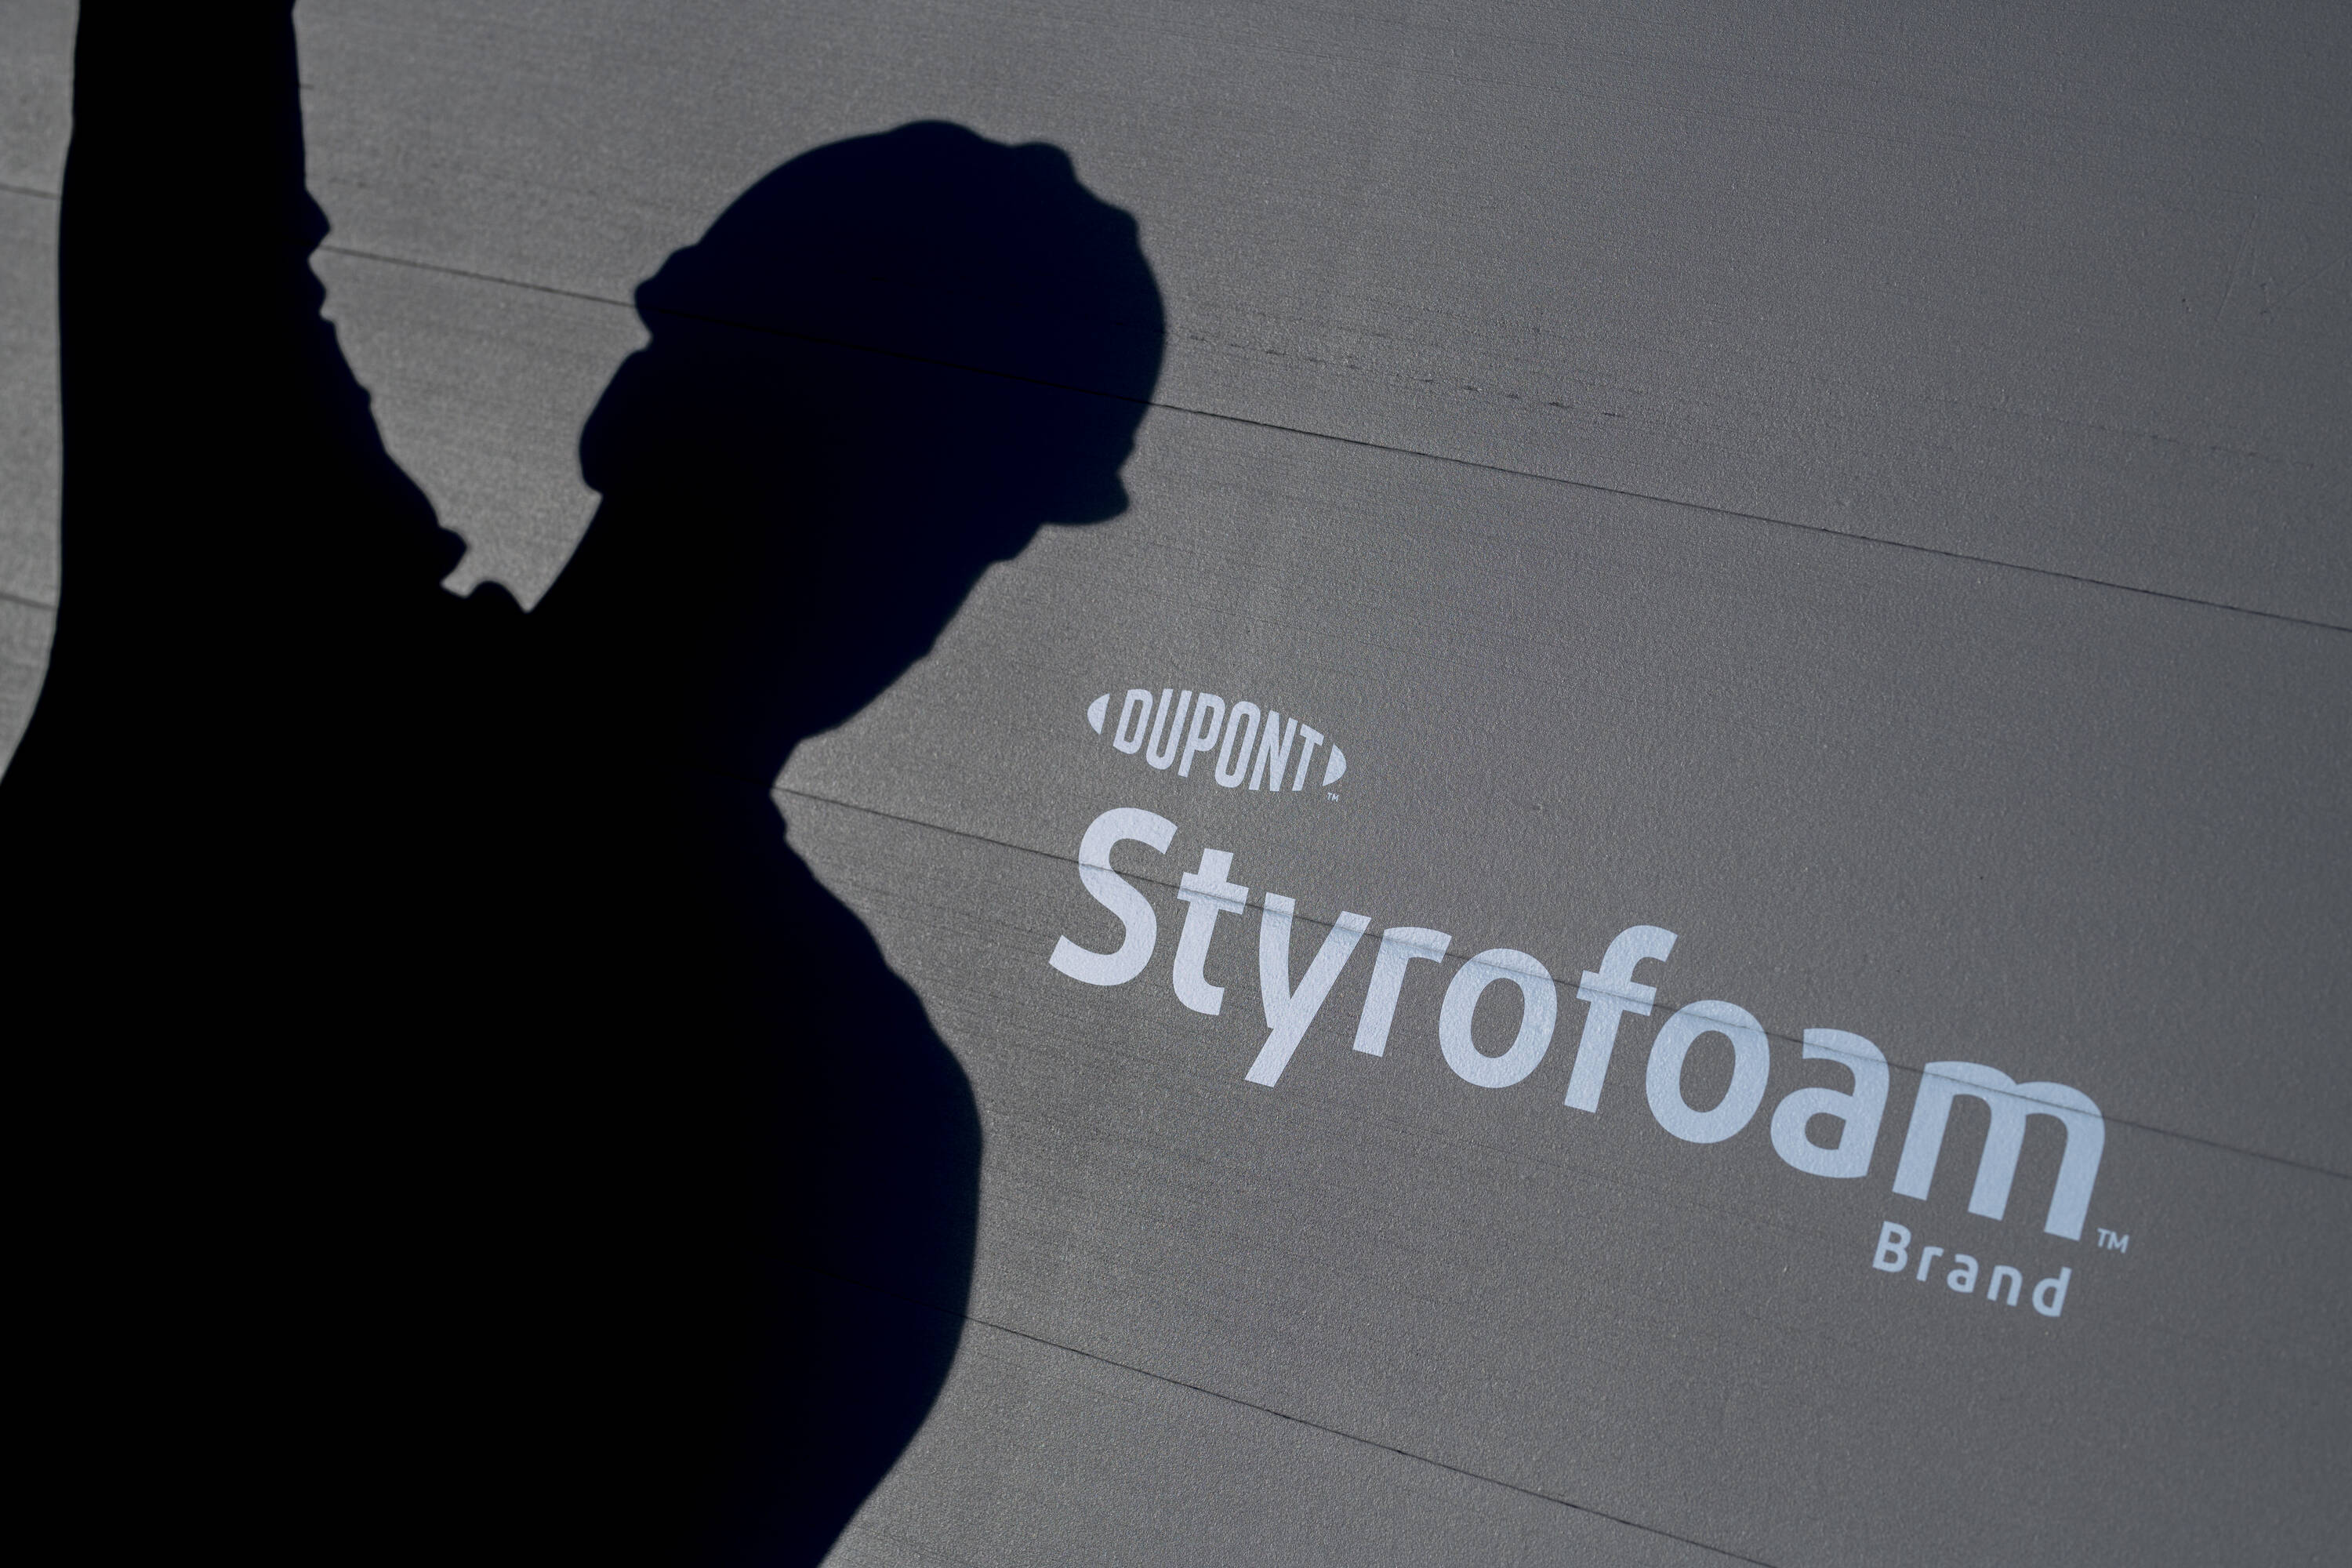 STYROFOAM R-4, 0.78-in x 4-ft x 8-ft Residential Sheathing Faced